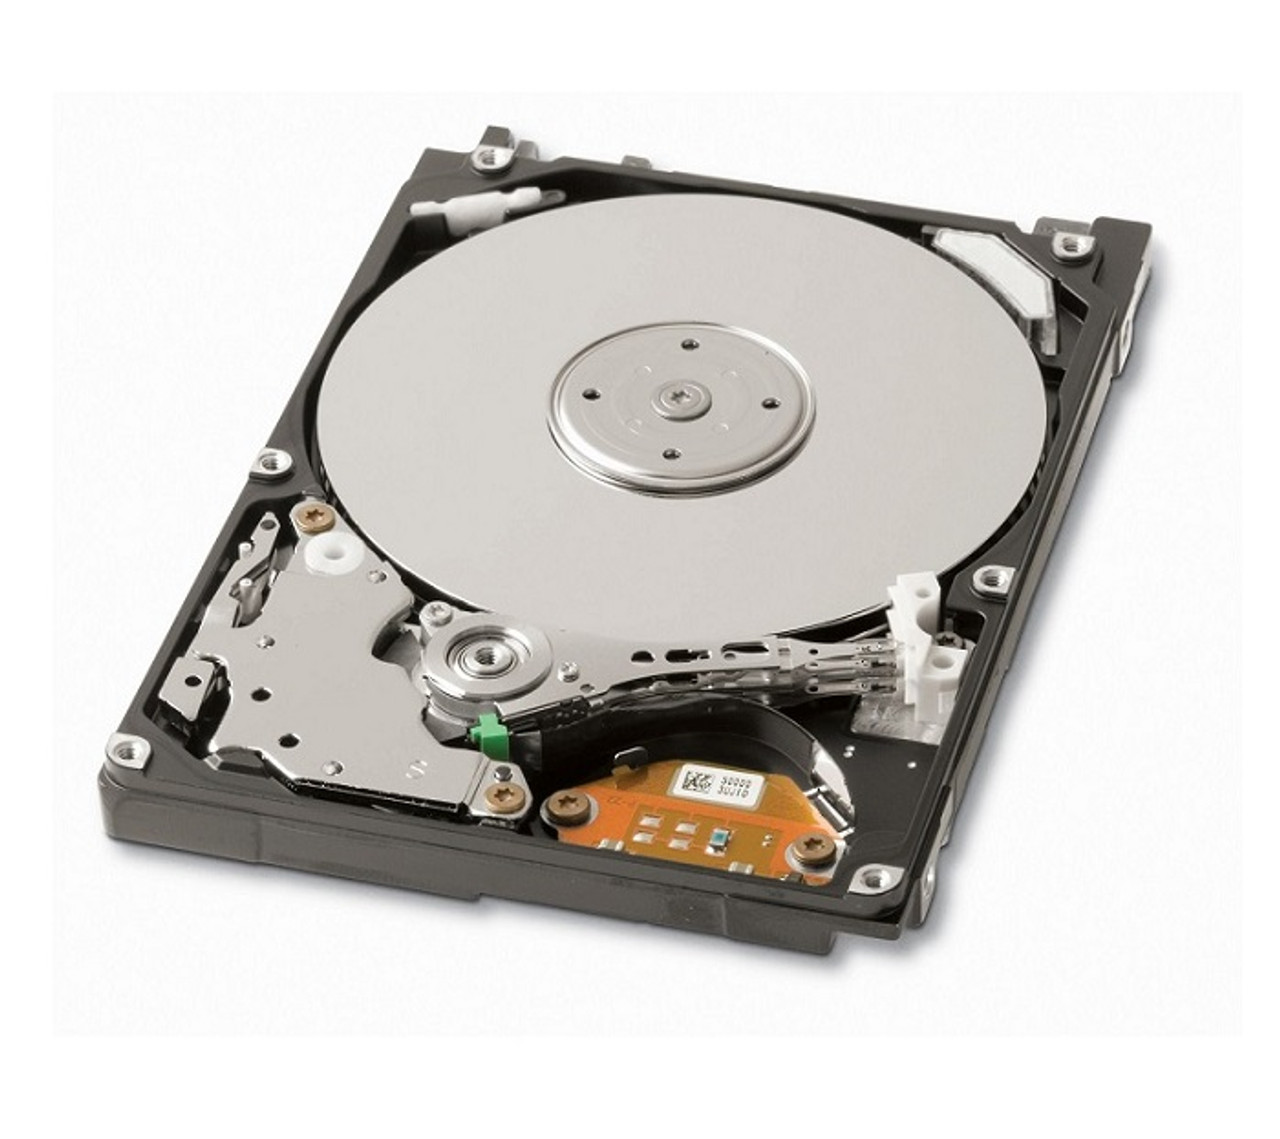 01M158 - Dell 30GB 4200RPM ATA/IDE 2.5-inch Hard Disk Drive